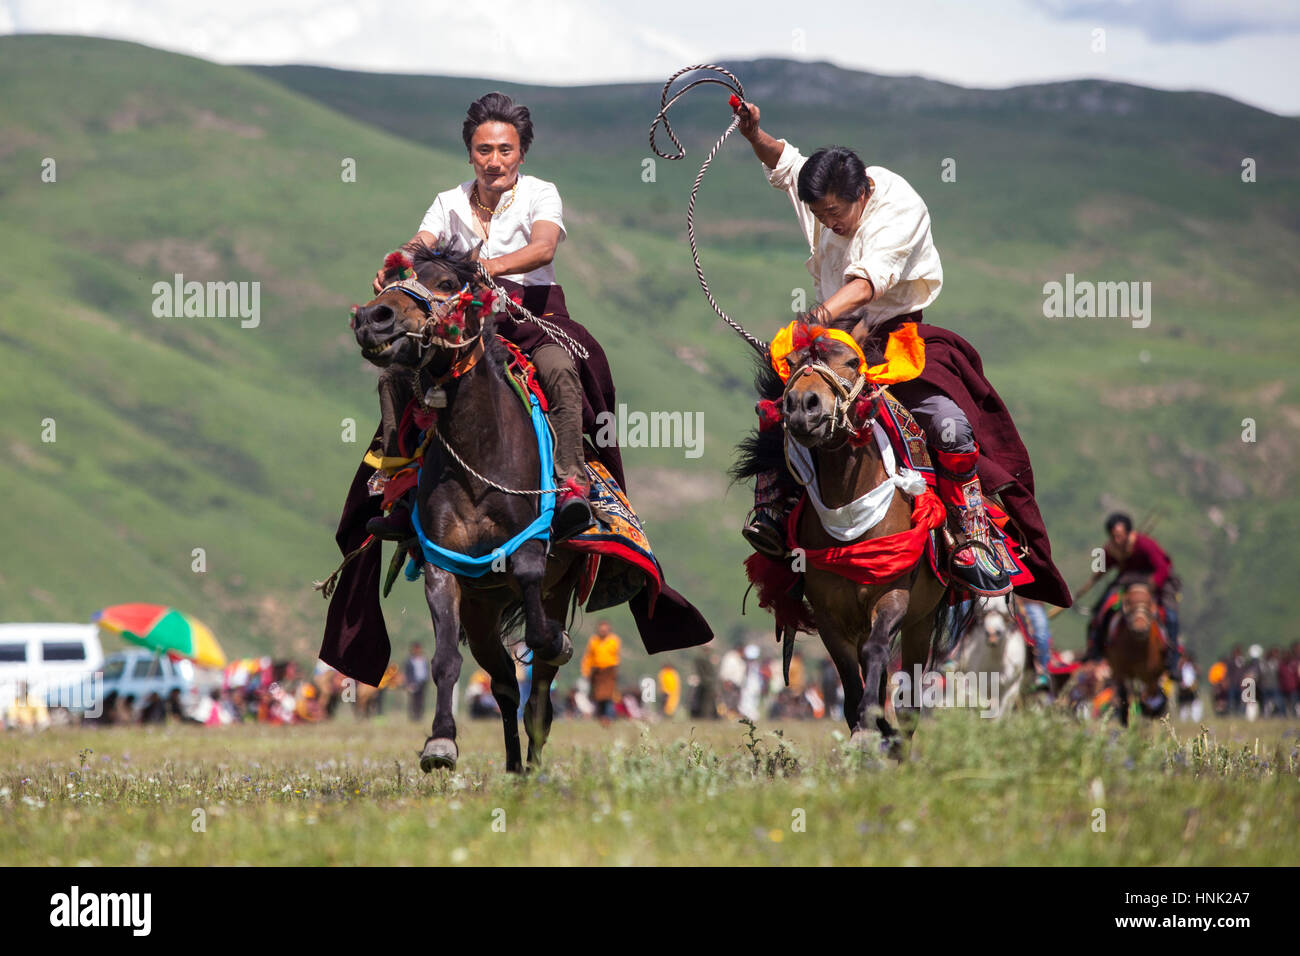 Khampa hommes monter à cheval au cours de la Fête du Cheval Manigango dans la région du Plateau tibétain dans le Sichuan, Chine. Banque D'Images